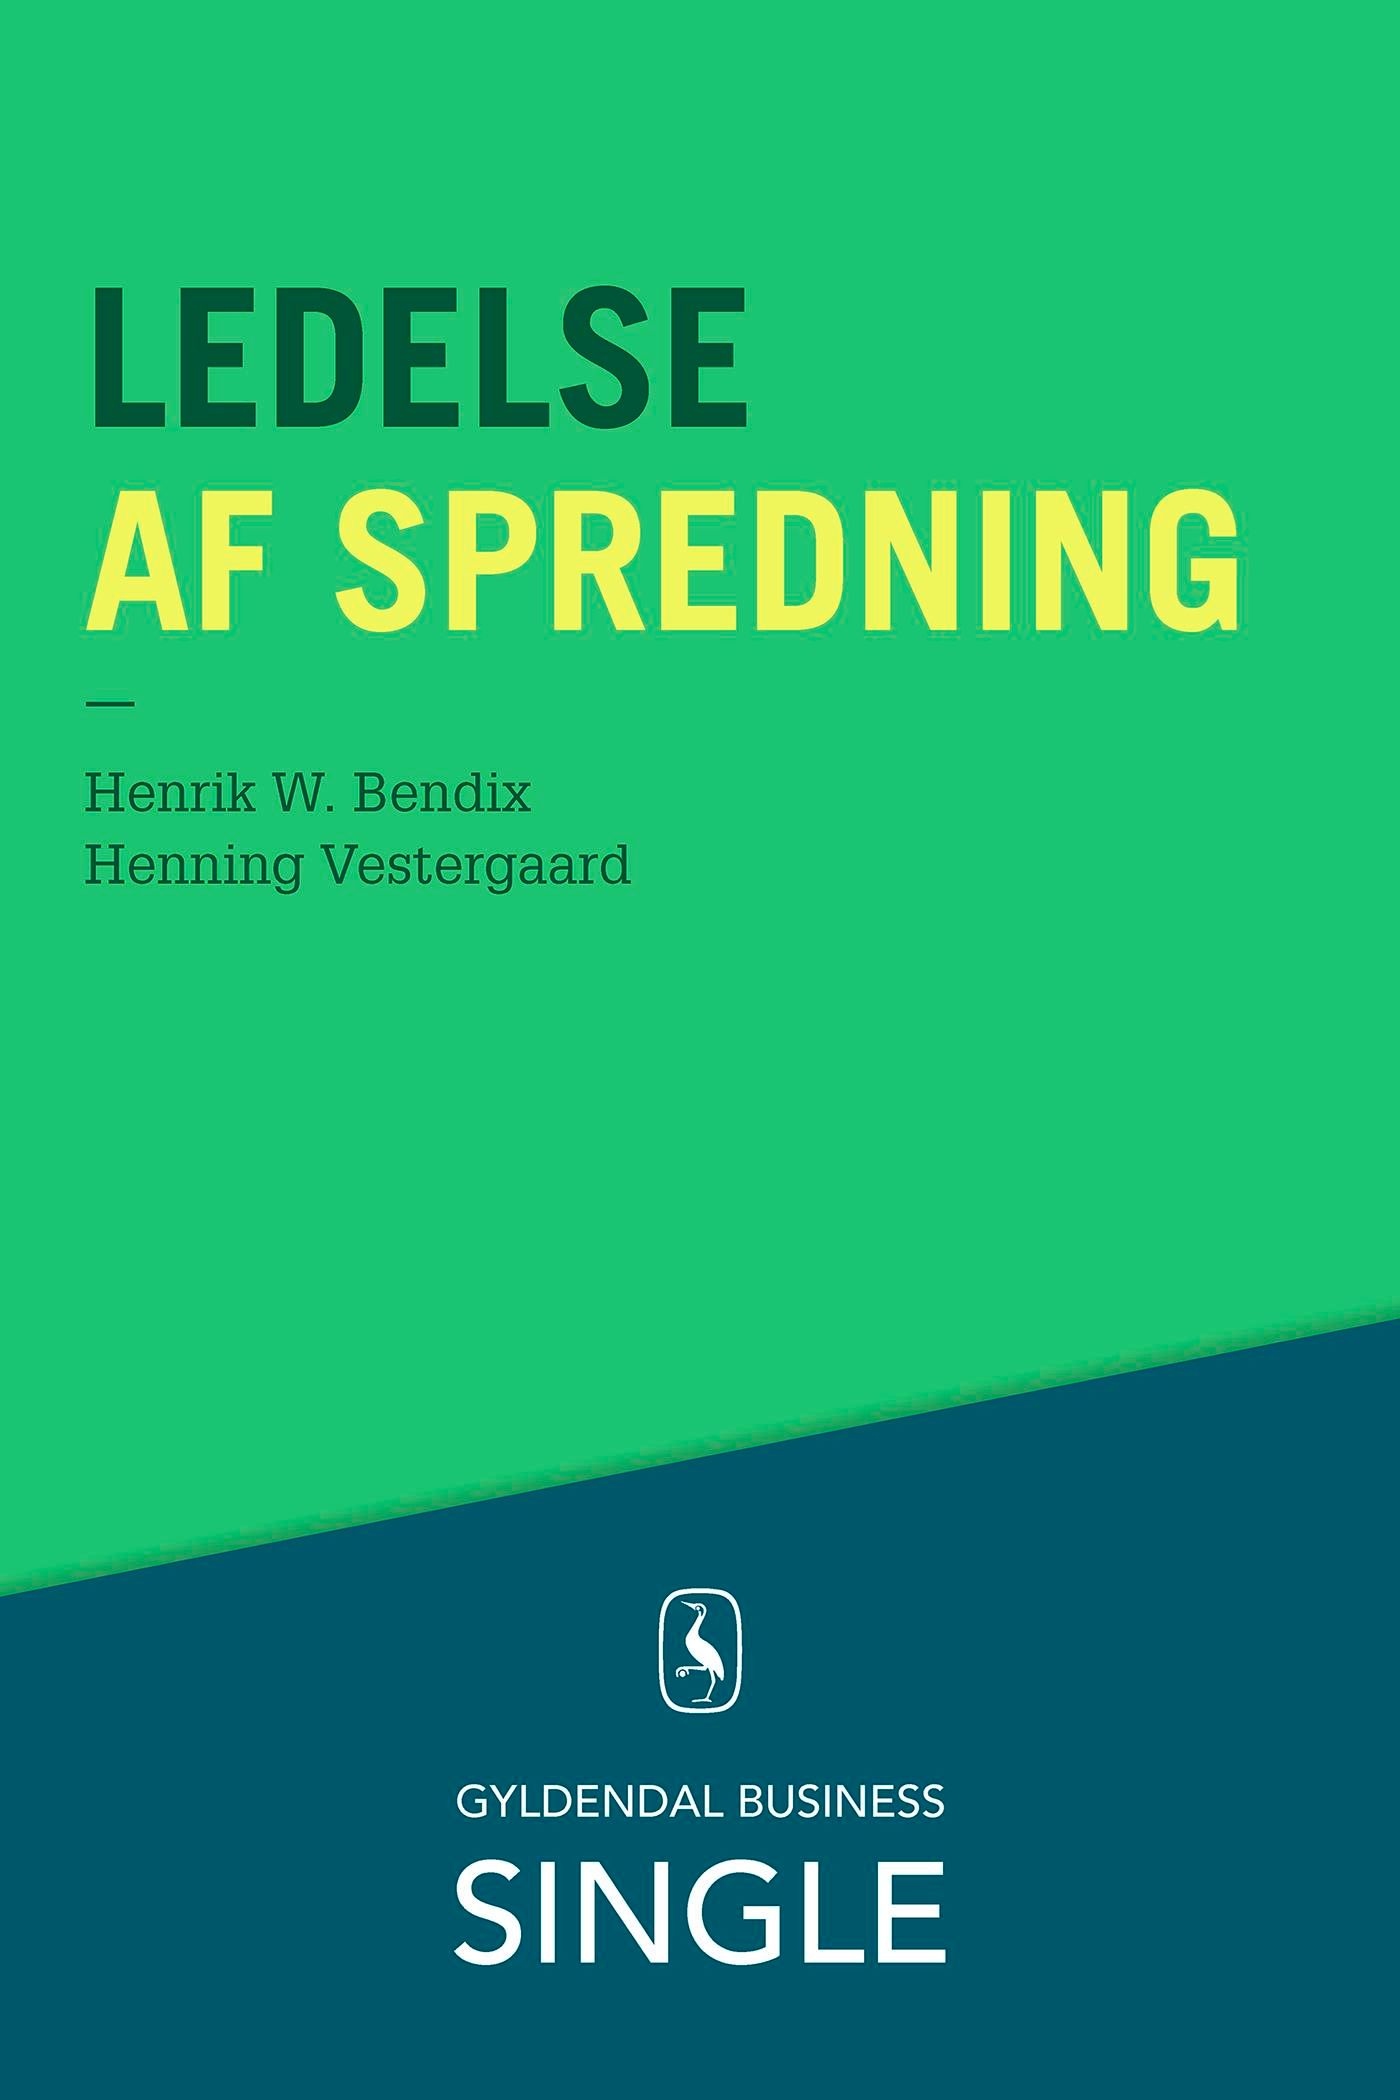 Ledelse af spredning, eBook by Henrik W. Bendix, Henning Vestergaard